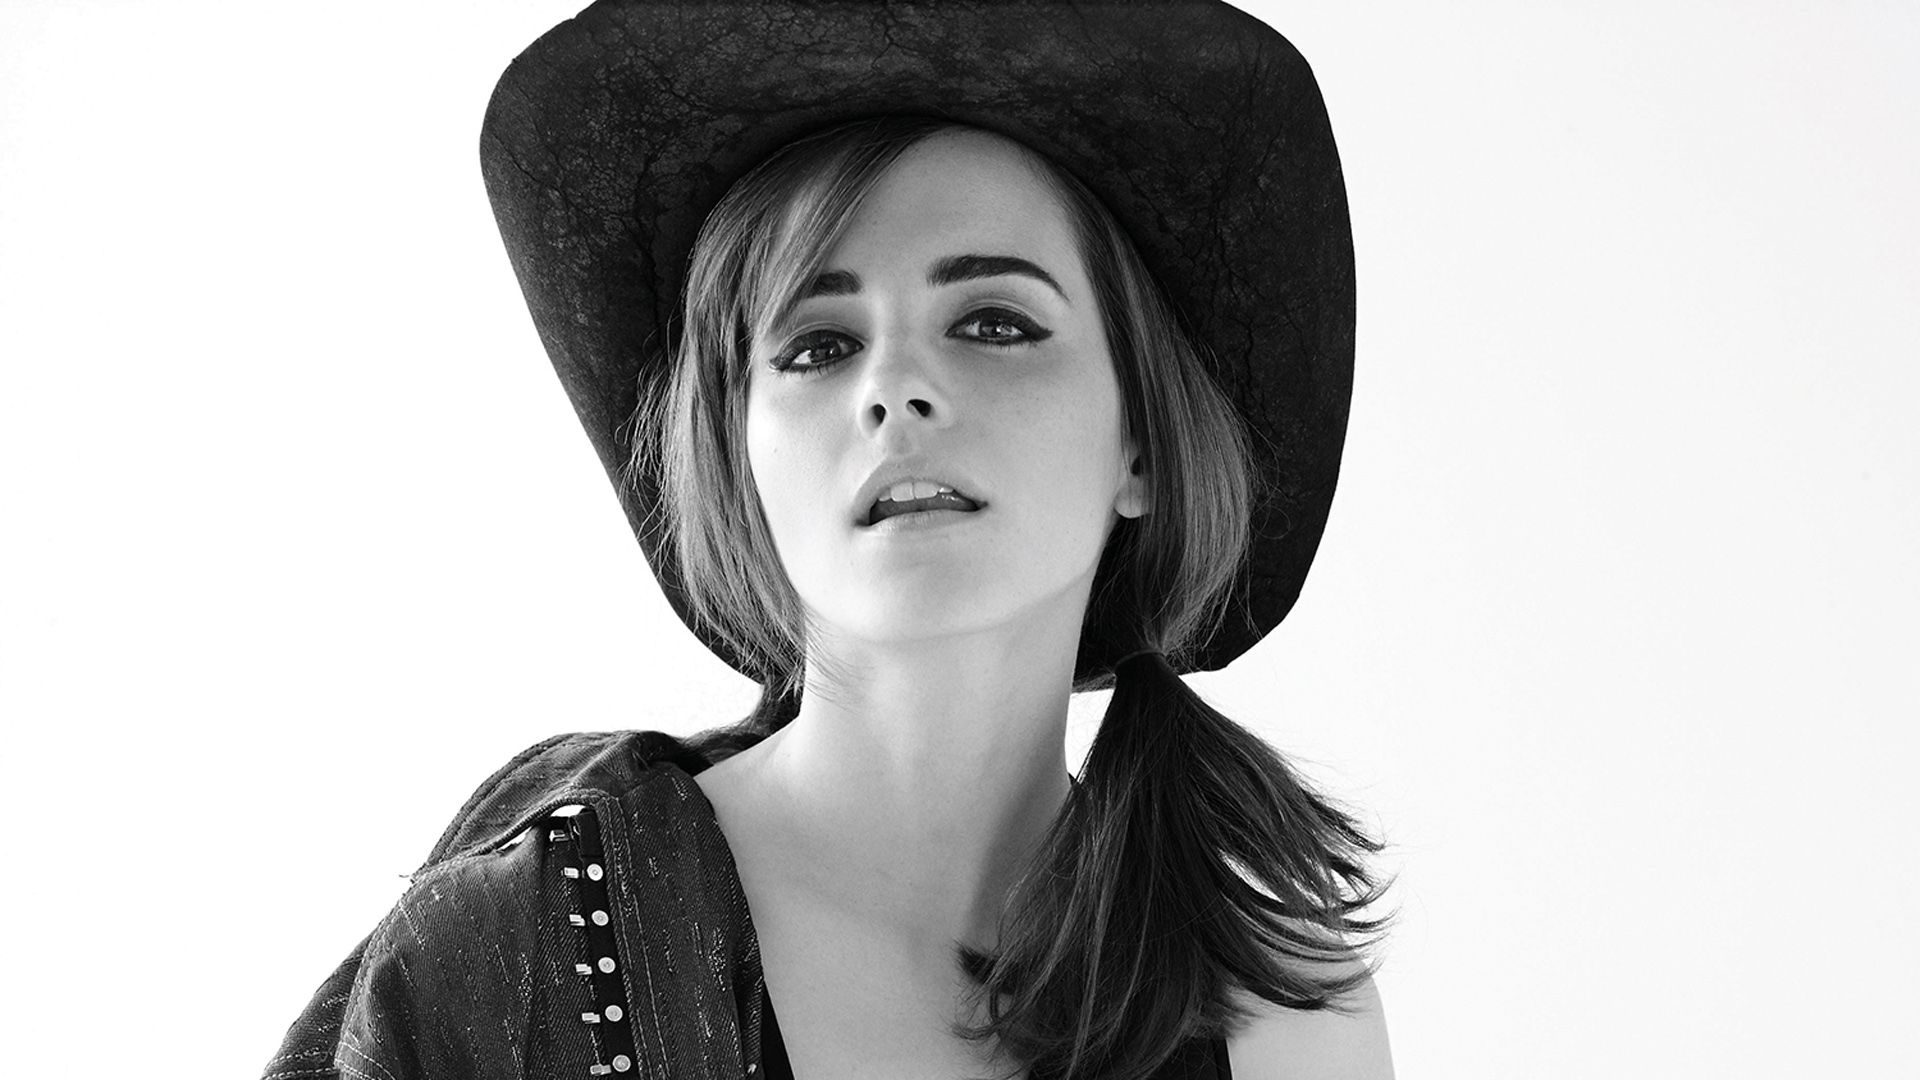 Emma Watson Cowboy Hat Wallpaper 65486 1920x1080px